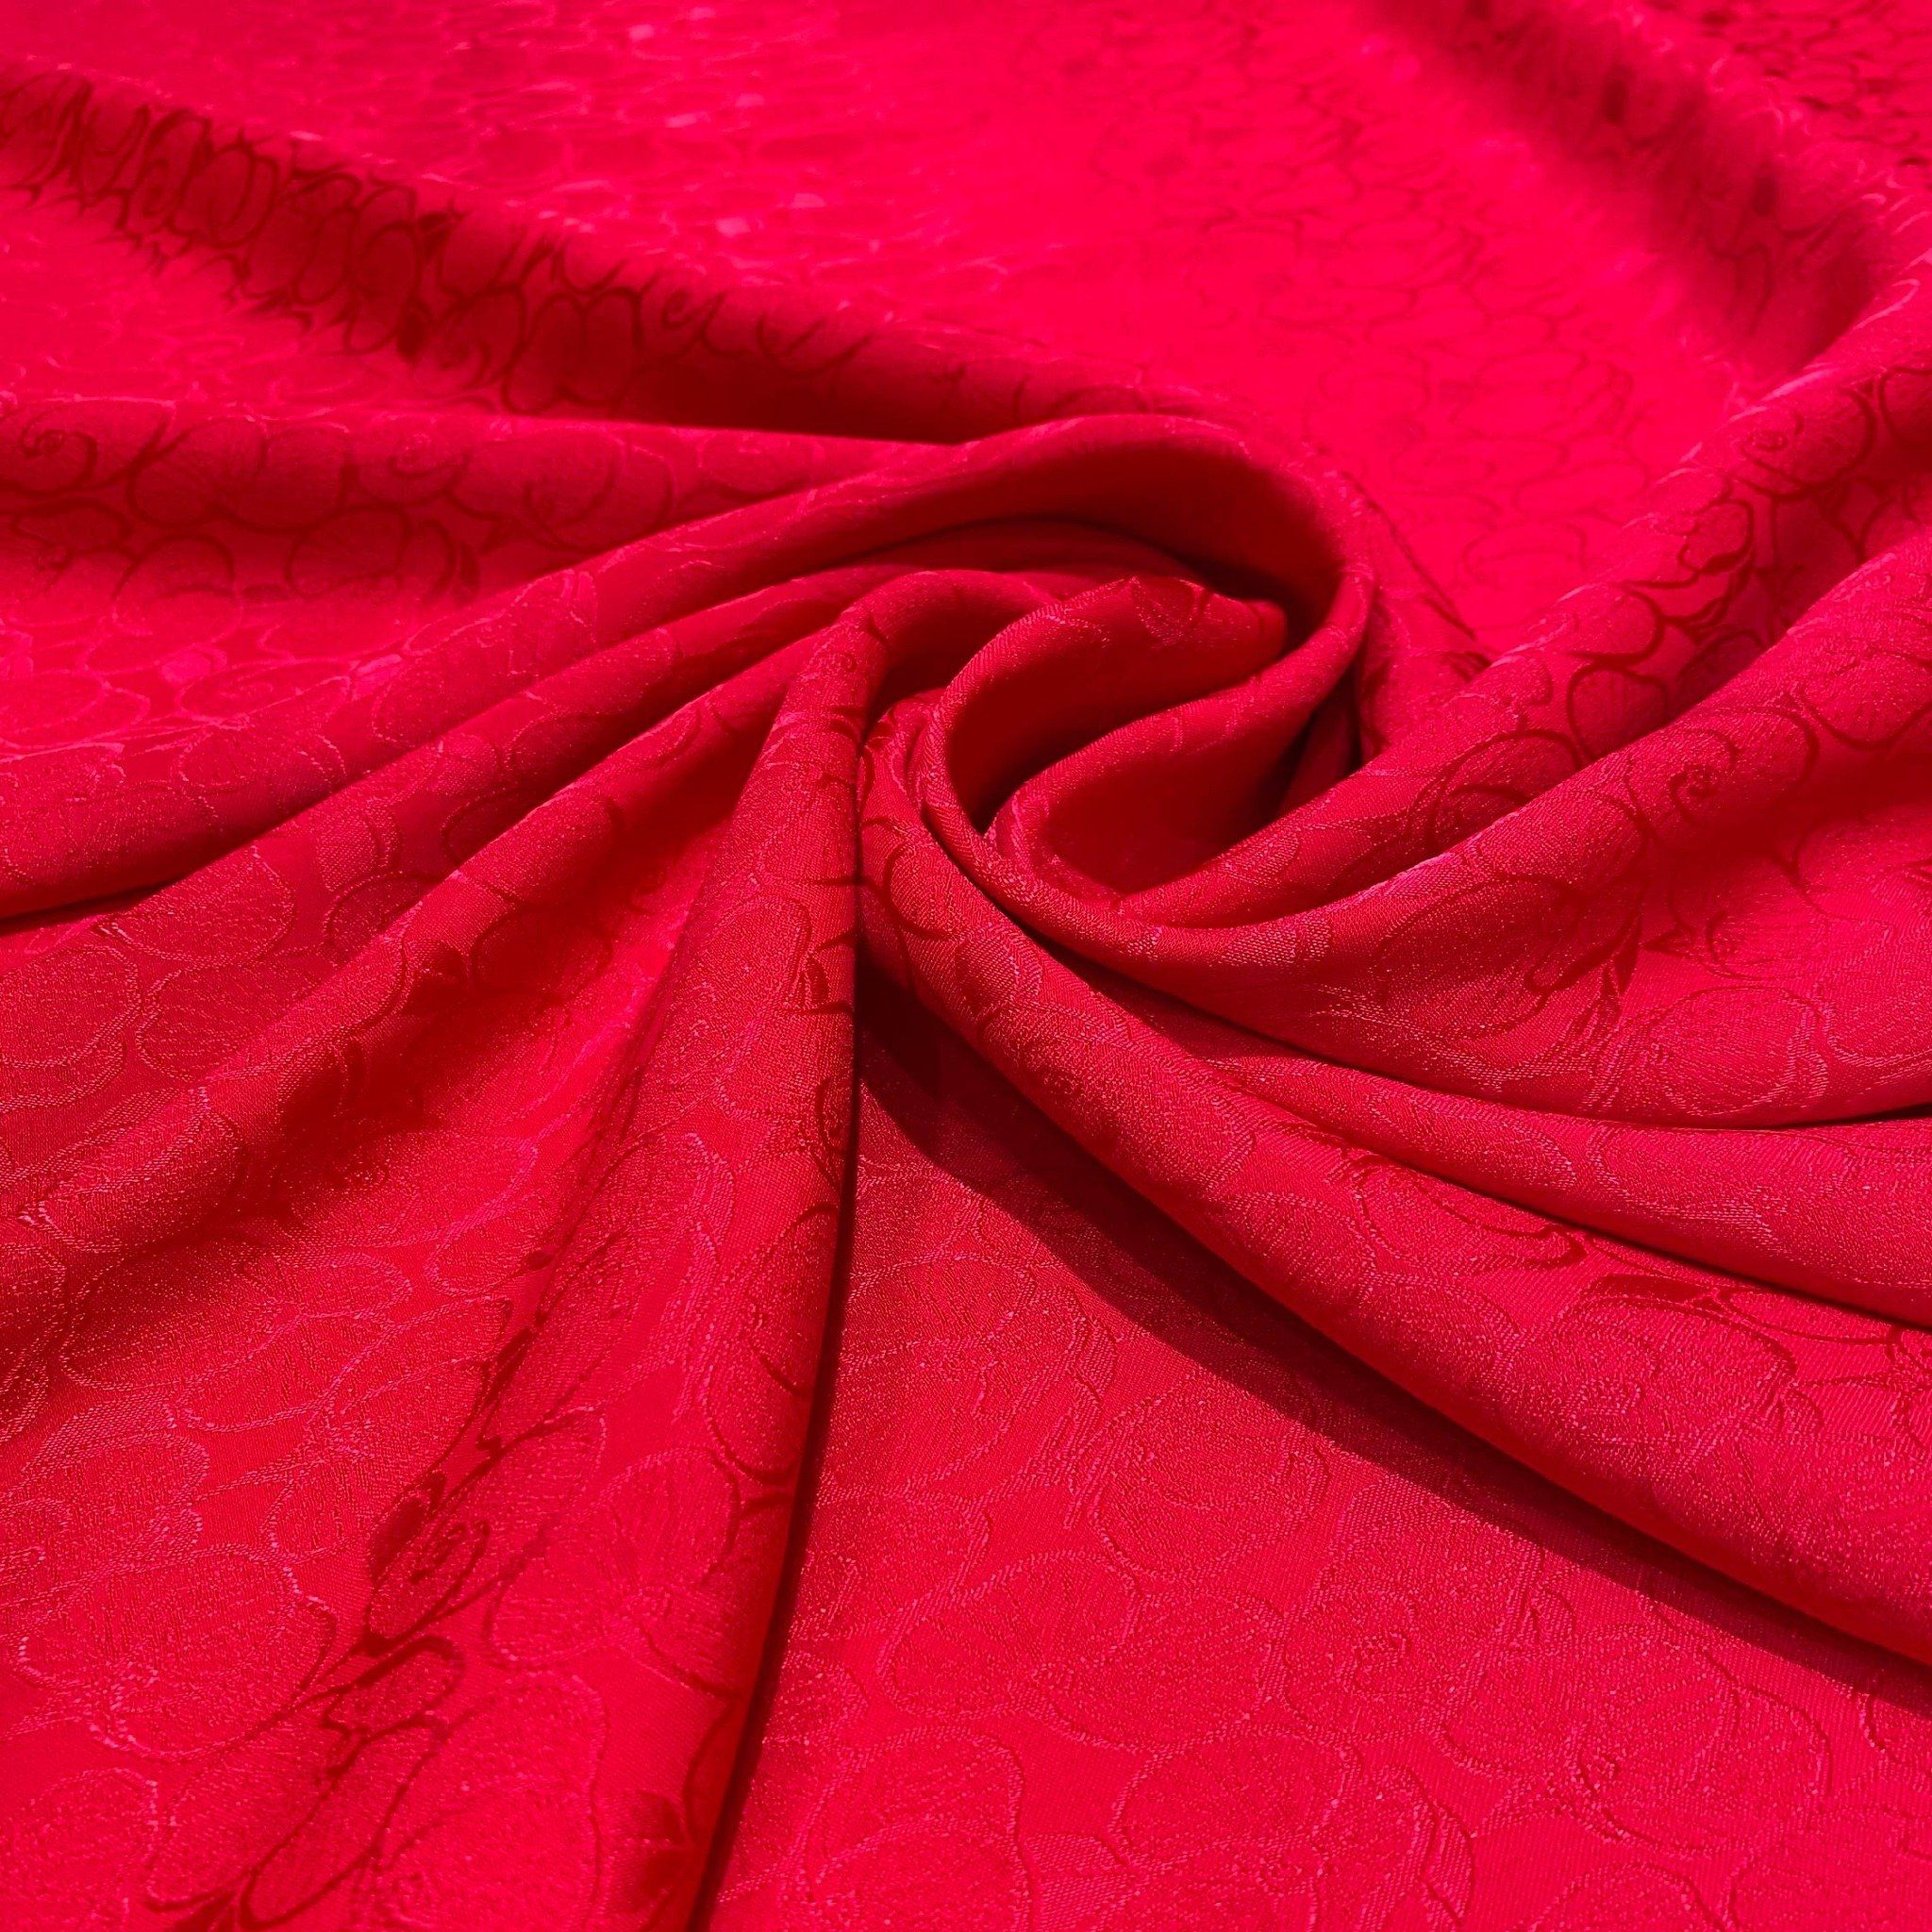 DRKN005031 Vải Gấm Quỳnh Giao Hoa Lá Màu Đỏ Khổ 1m15